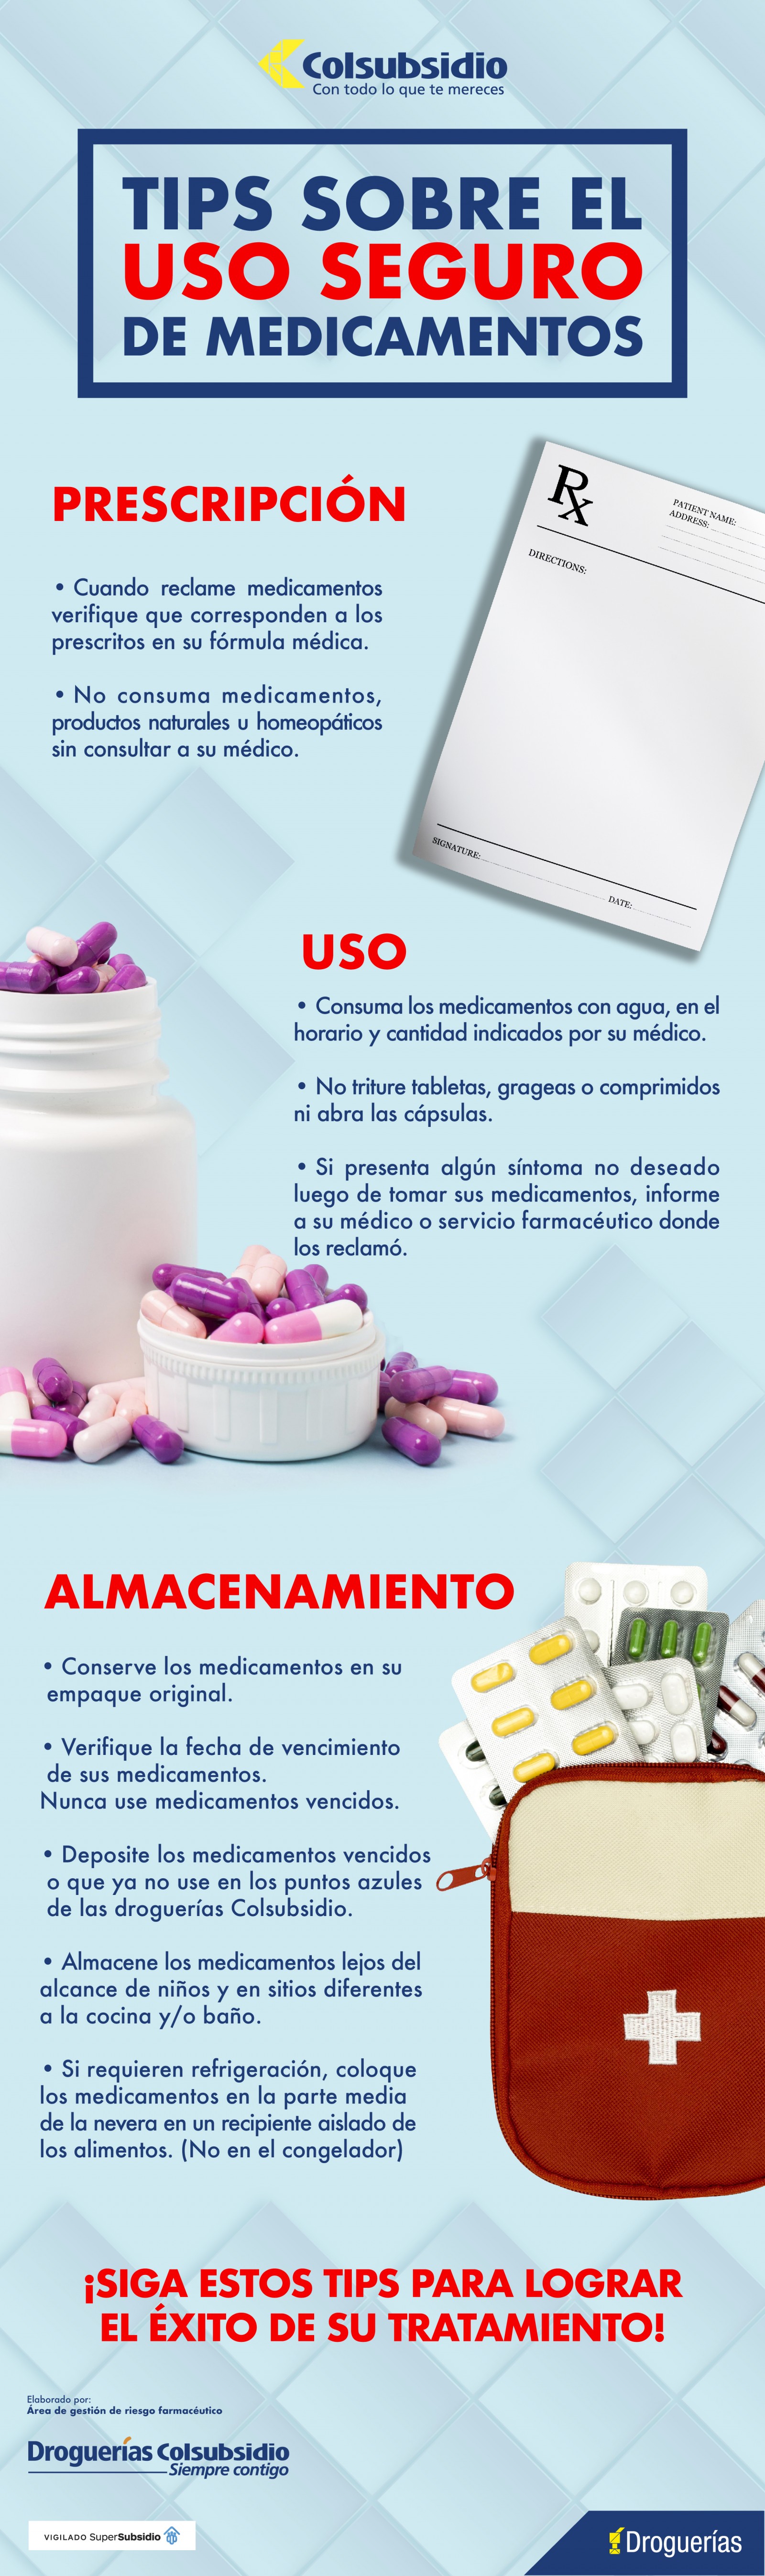 1.-RECOMENDACIONES-USO-DE-MEDICAMENTOS